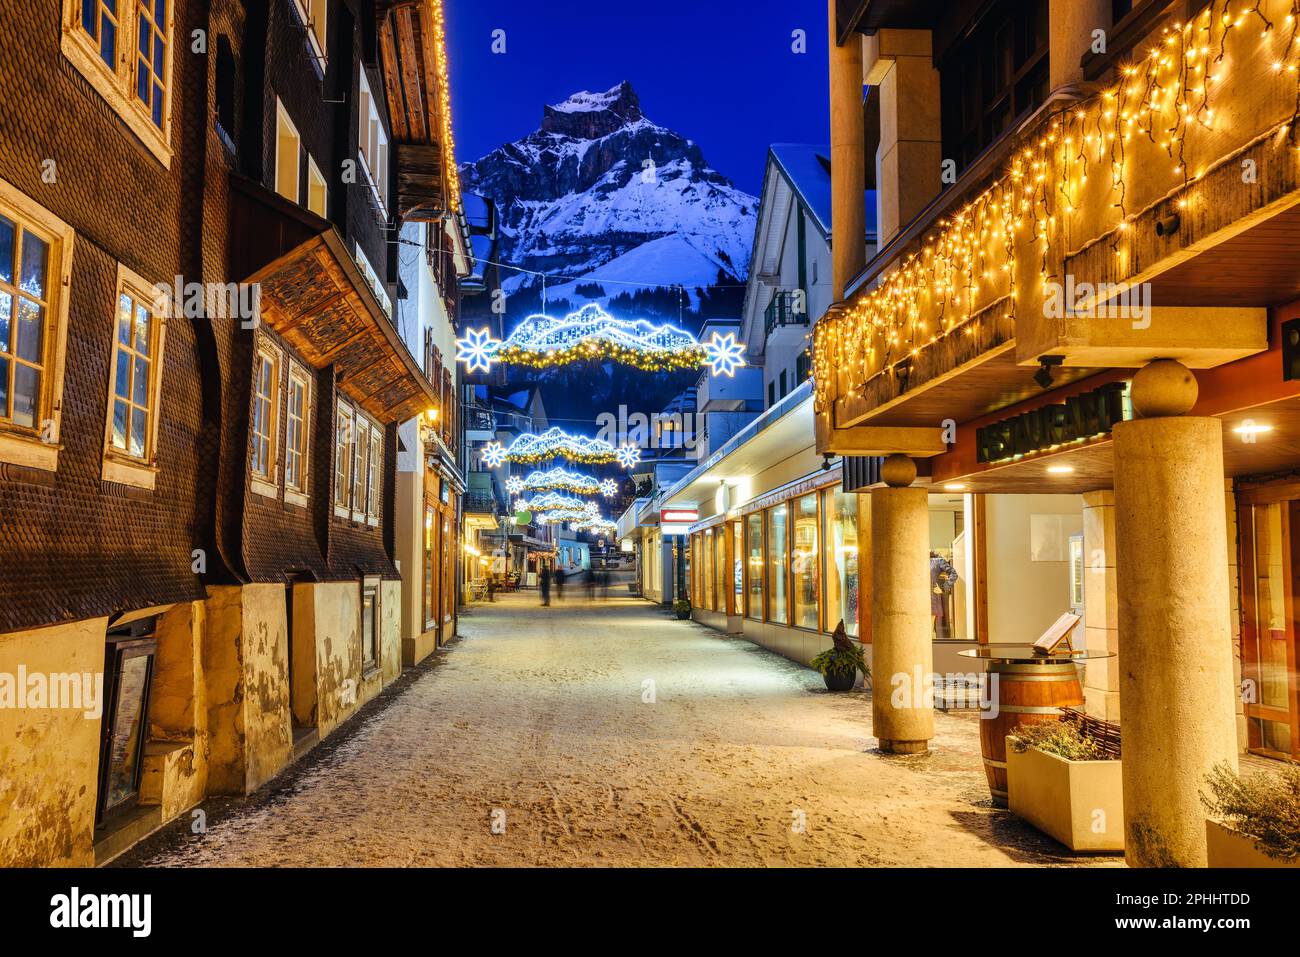 Weihnachtsdekorationen und traditionelle hölzerne Chalet-Häuser in einer Straße in der Altstadt des Dorfes Engelberg, einem beliebten Skigebiet in den Alpen Stockfoto